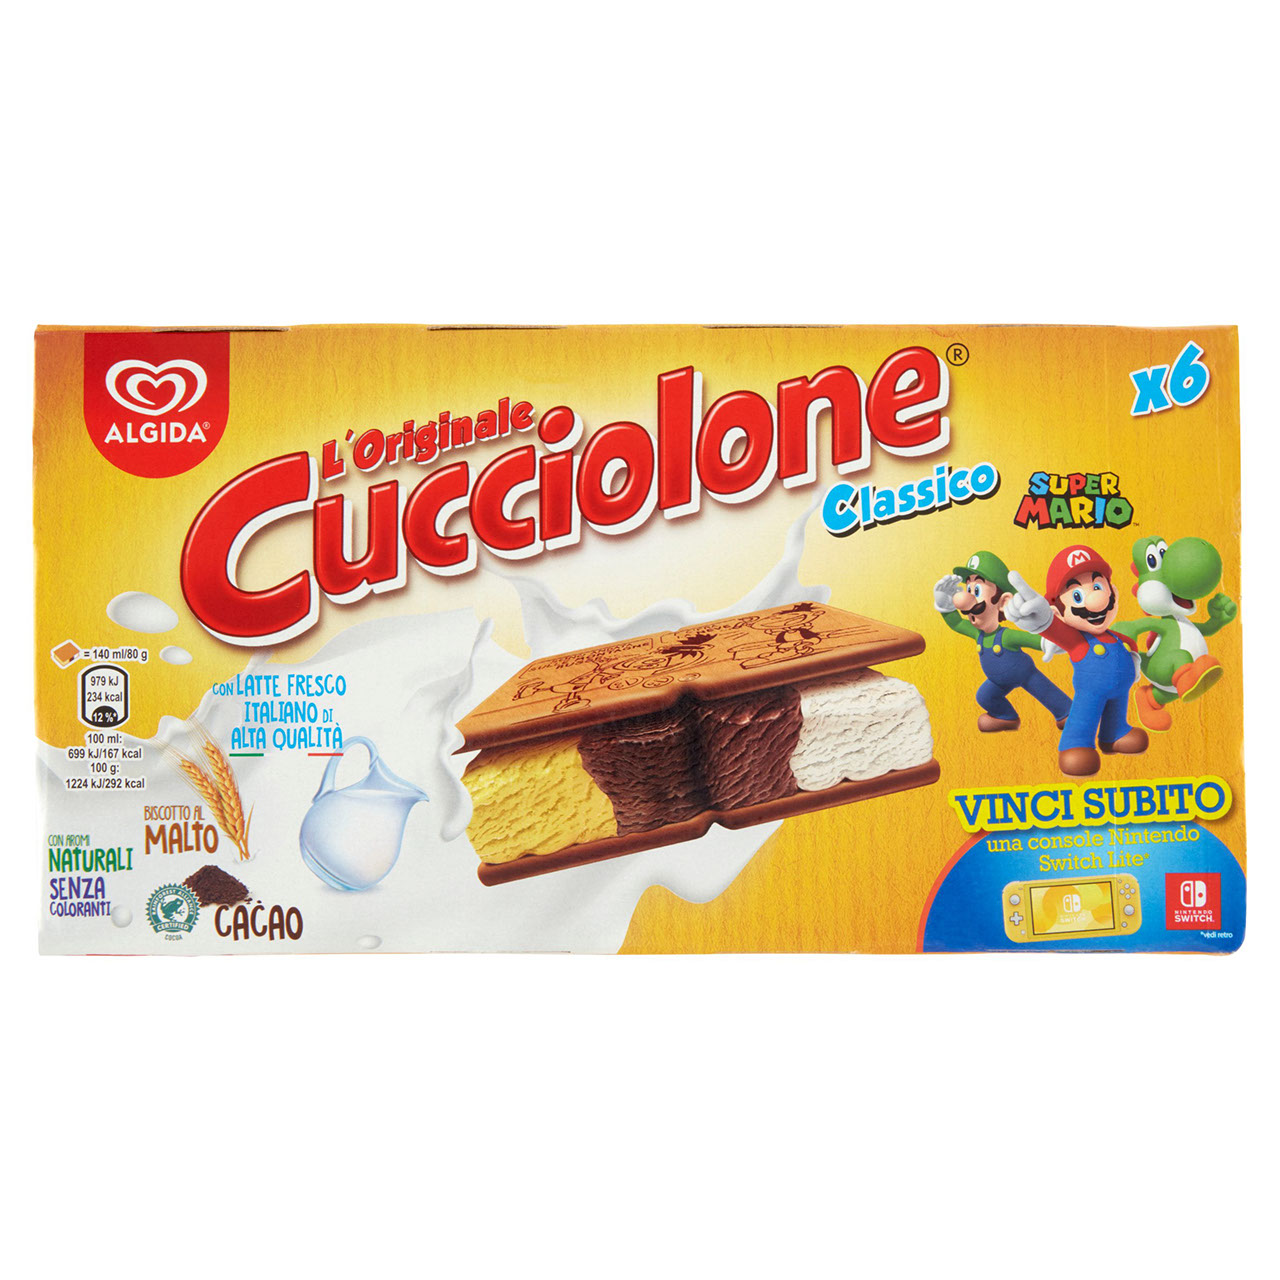 Algida Cucciolone Classico in vendita online